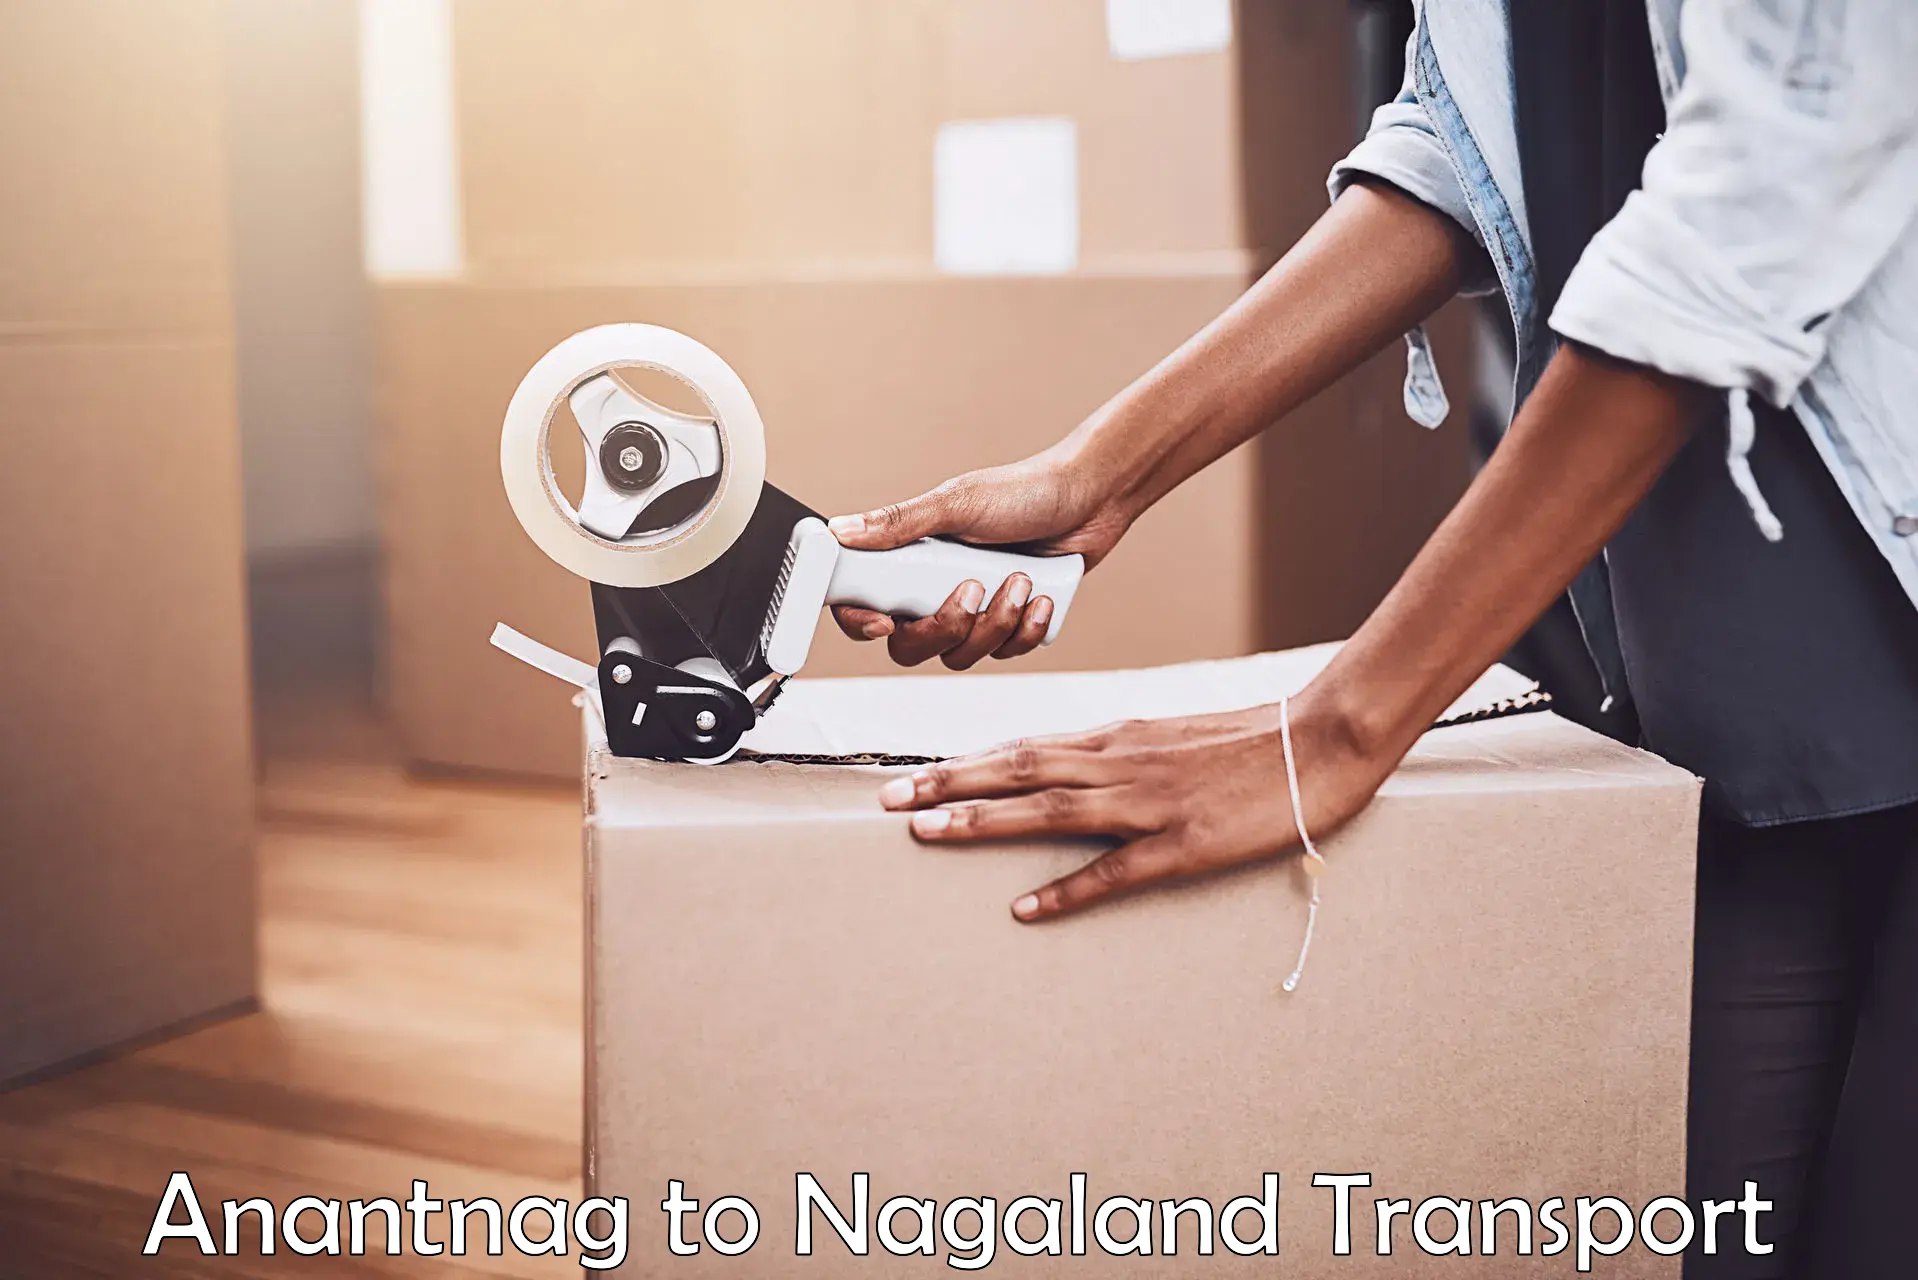 Interstate transport services Anantnag to Nagaland